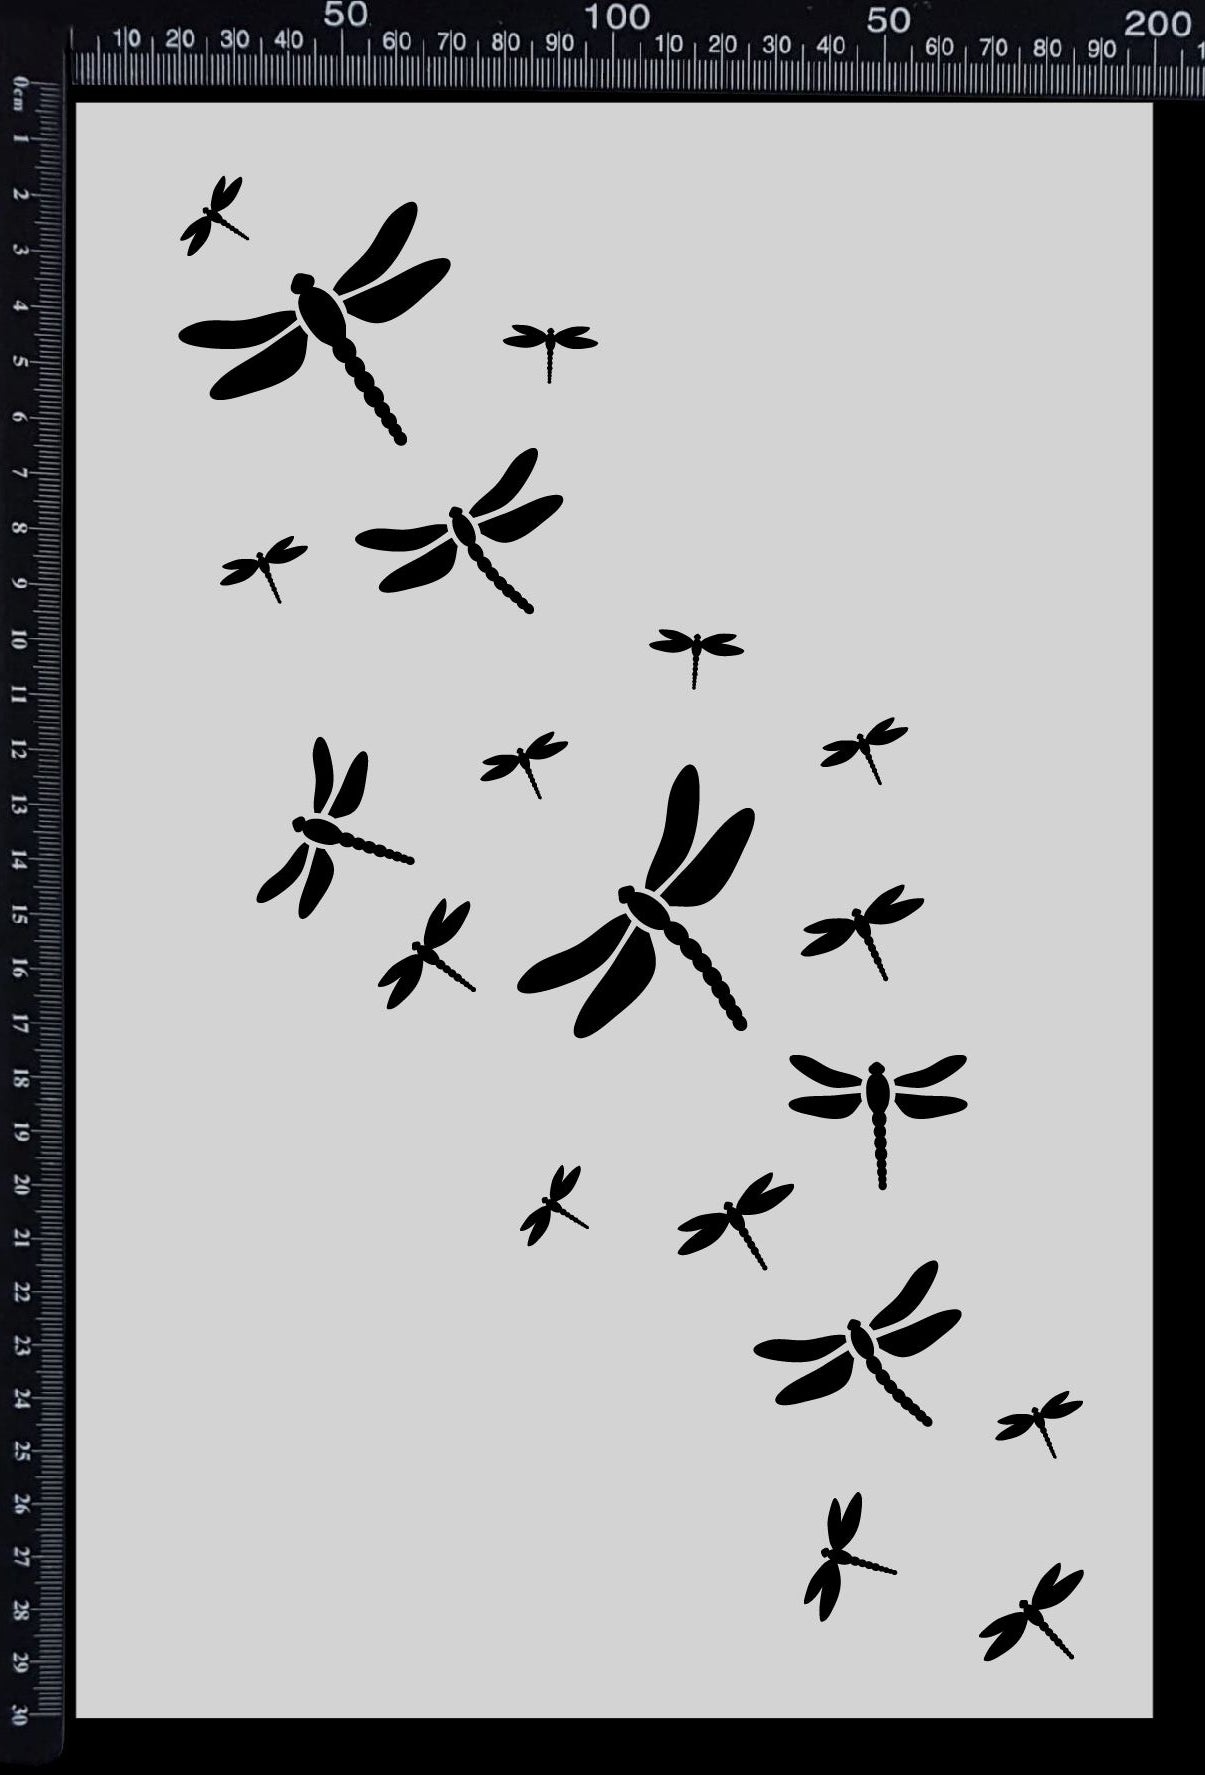 Dragonfly Trail - Stencil - 200mm x 300mm